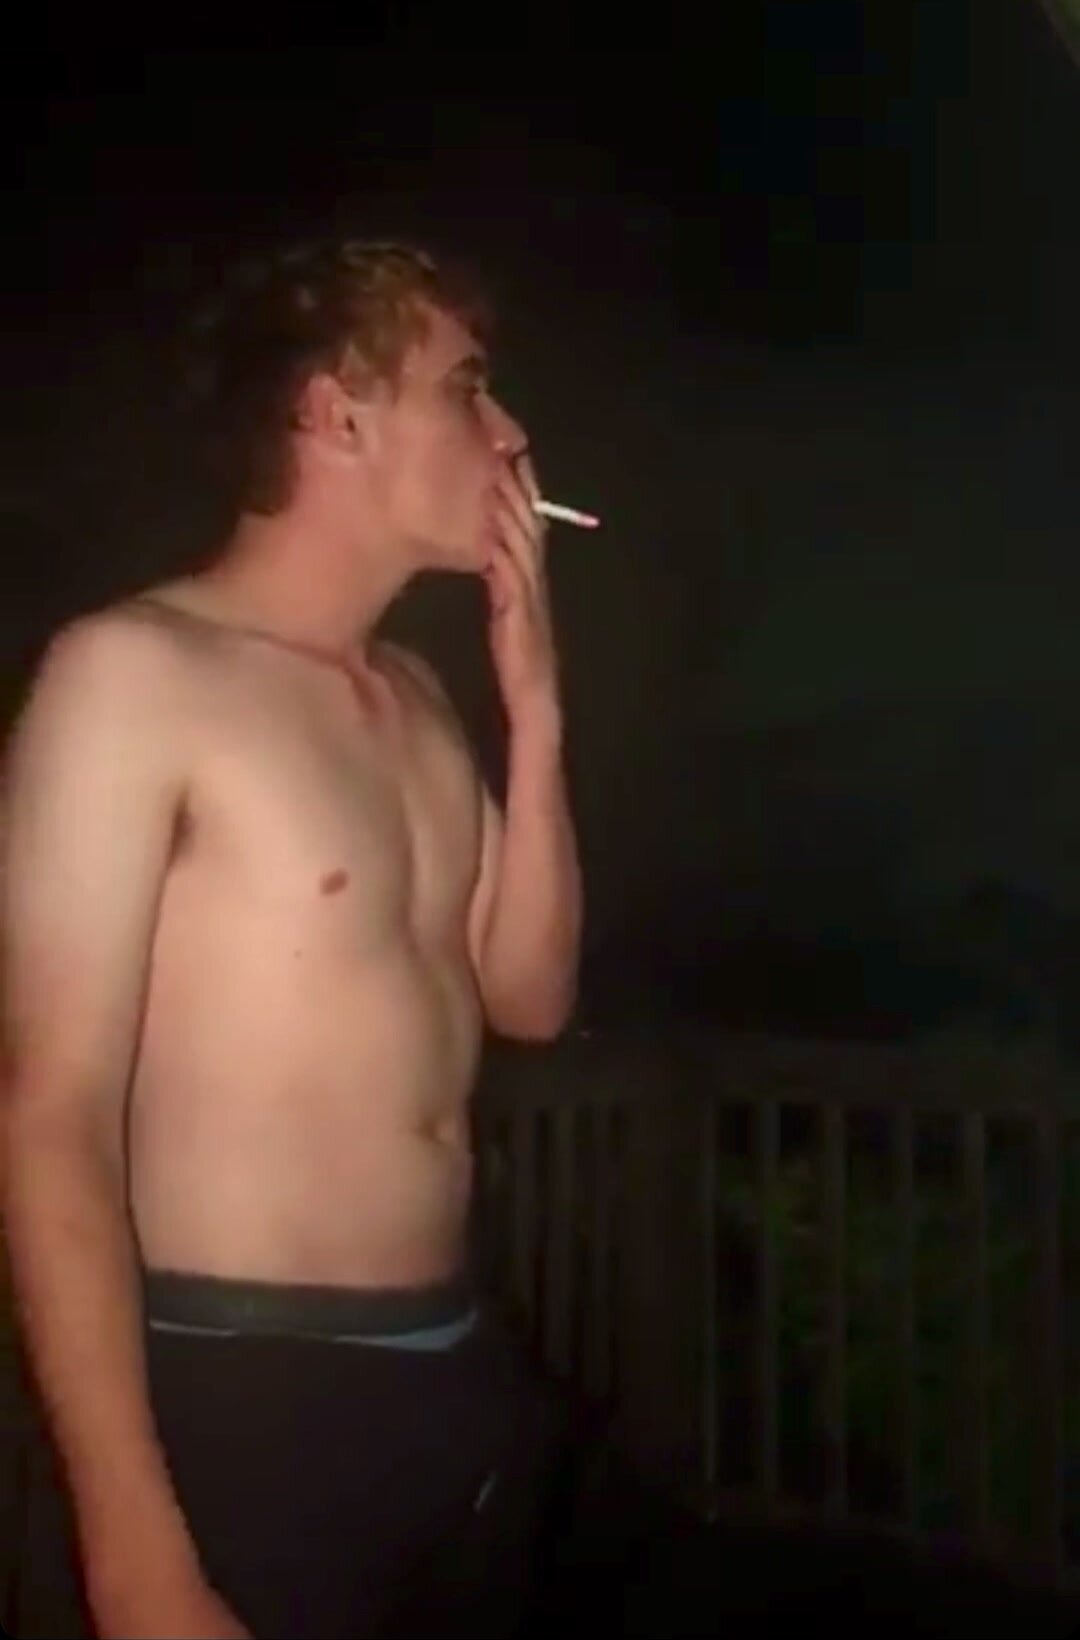 Hot blond boy smoking shirtless 